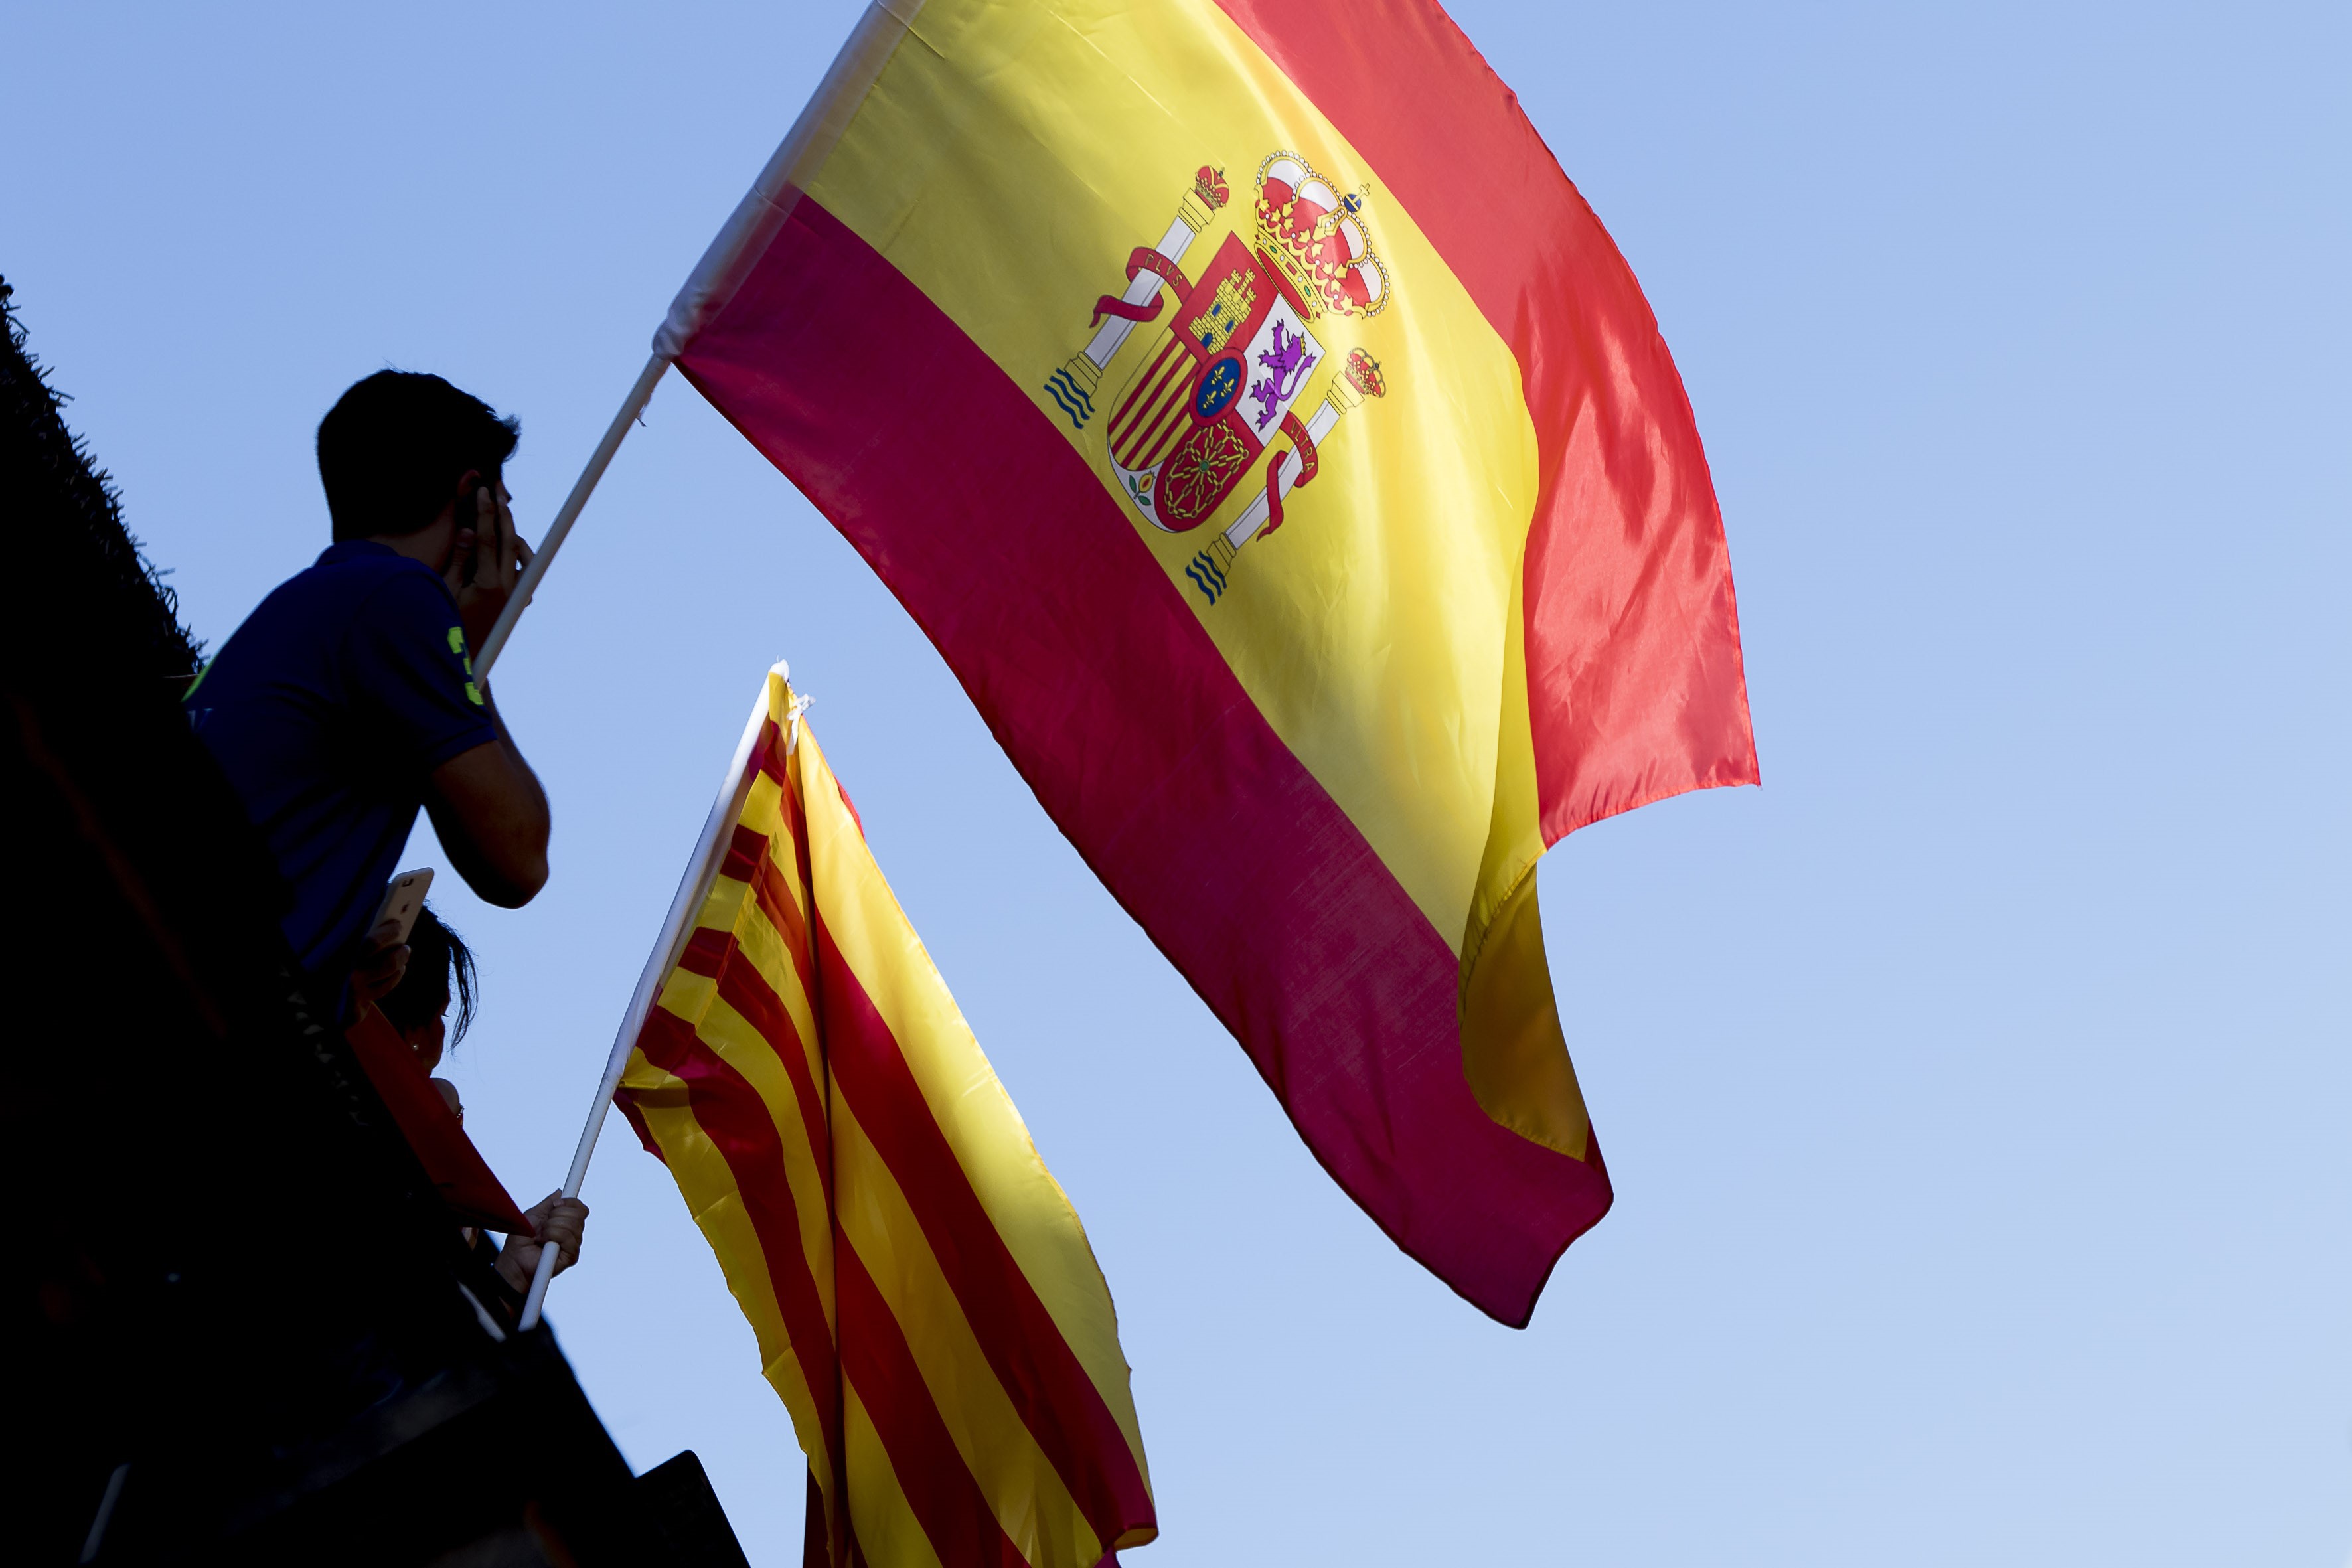 Spania se conformează mişcării europene: Ţara a expulzat 25 de diplomaţi ruşi